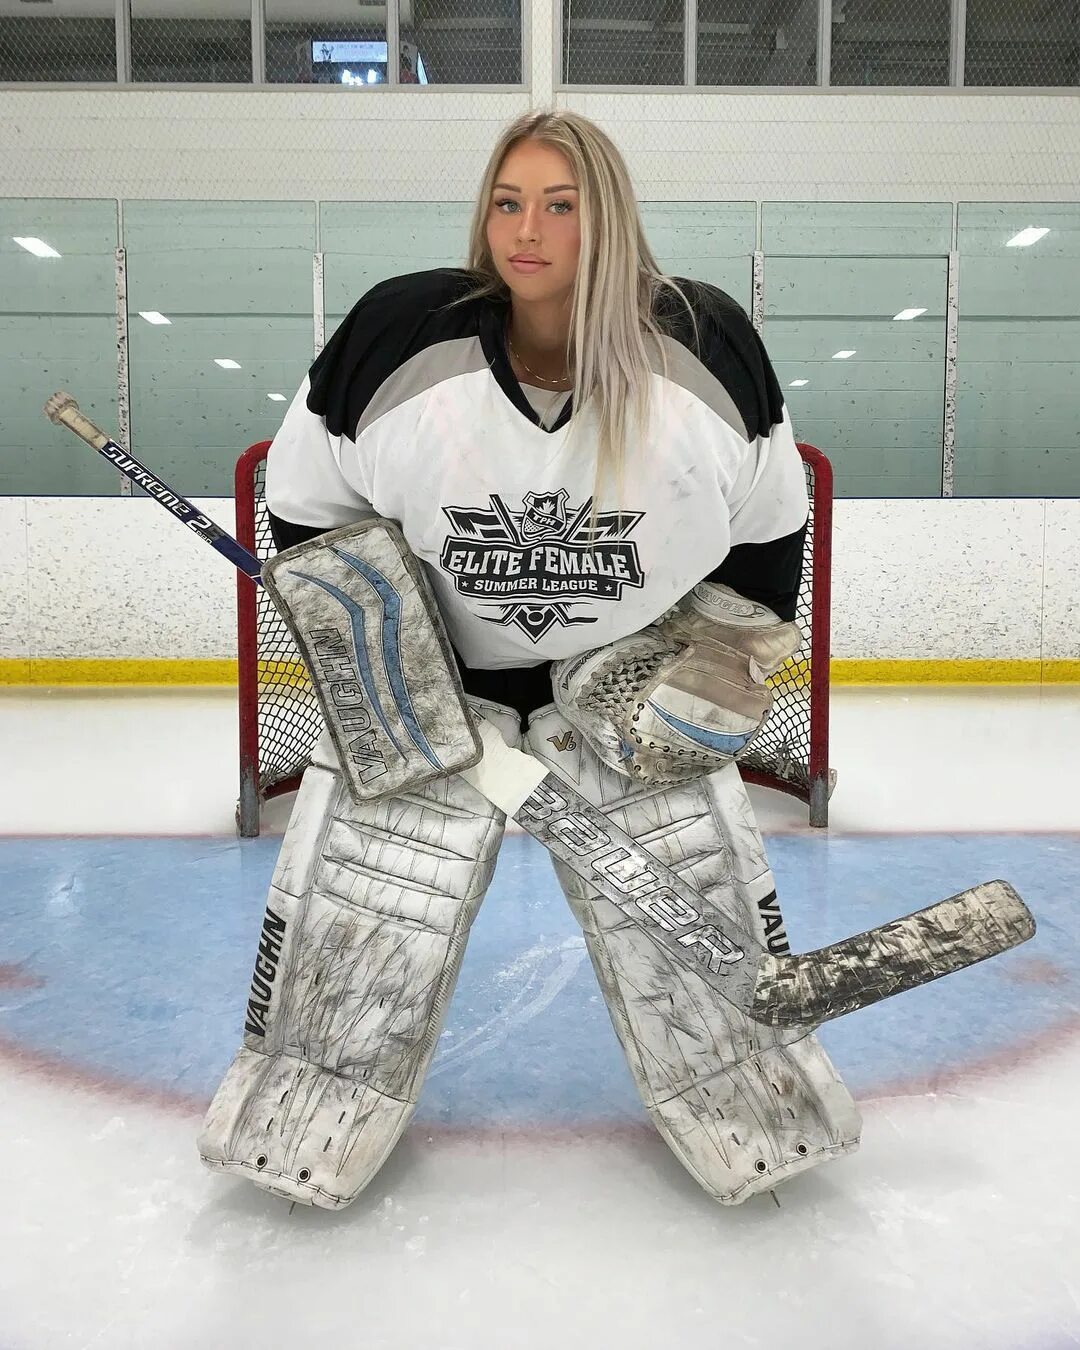 Mikayla Demaiter on Instagram: "hockey goalie turned ig model....what ...